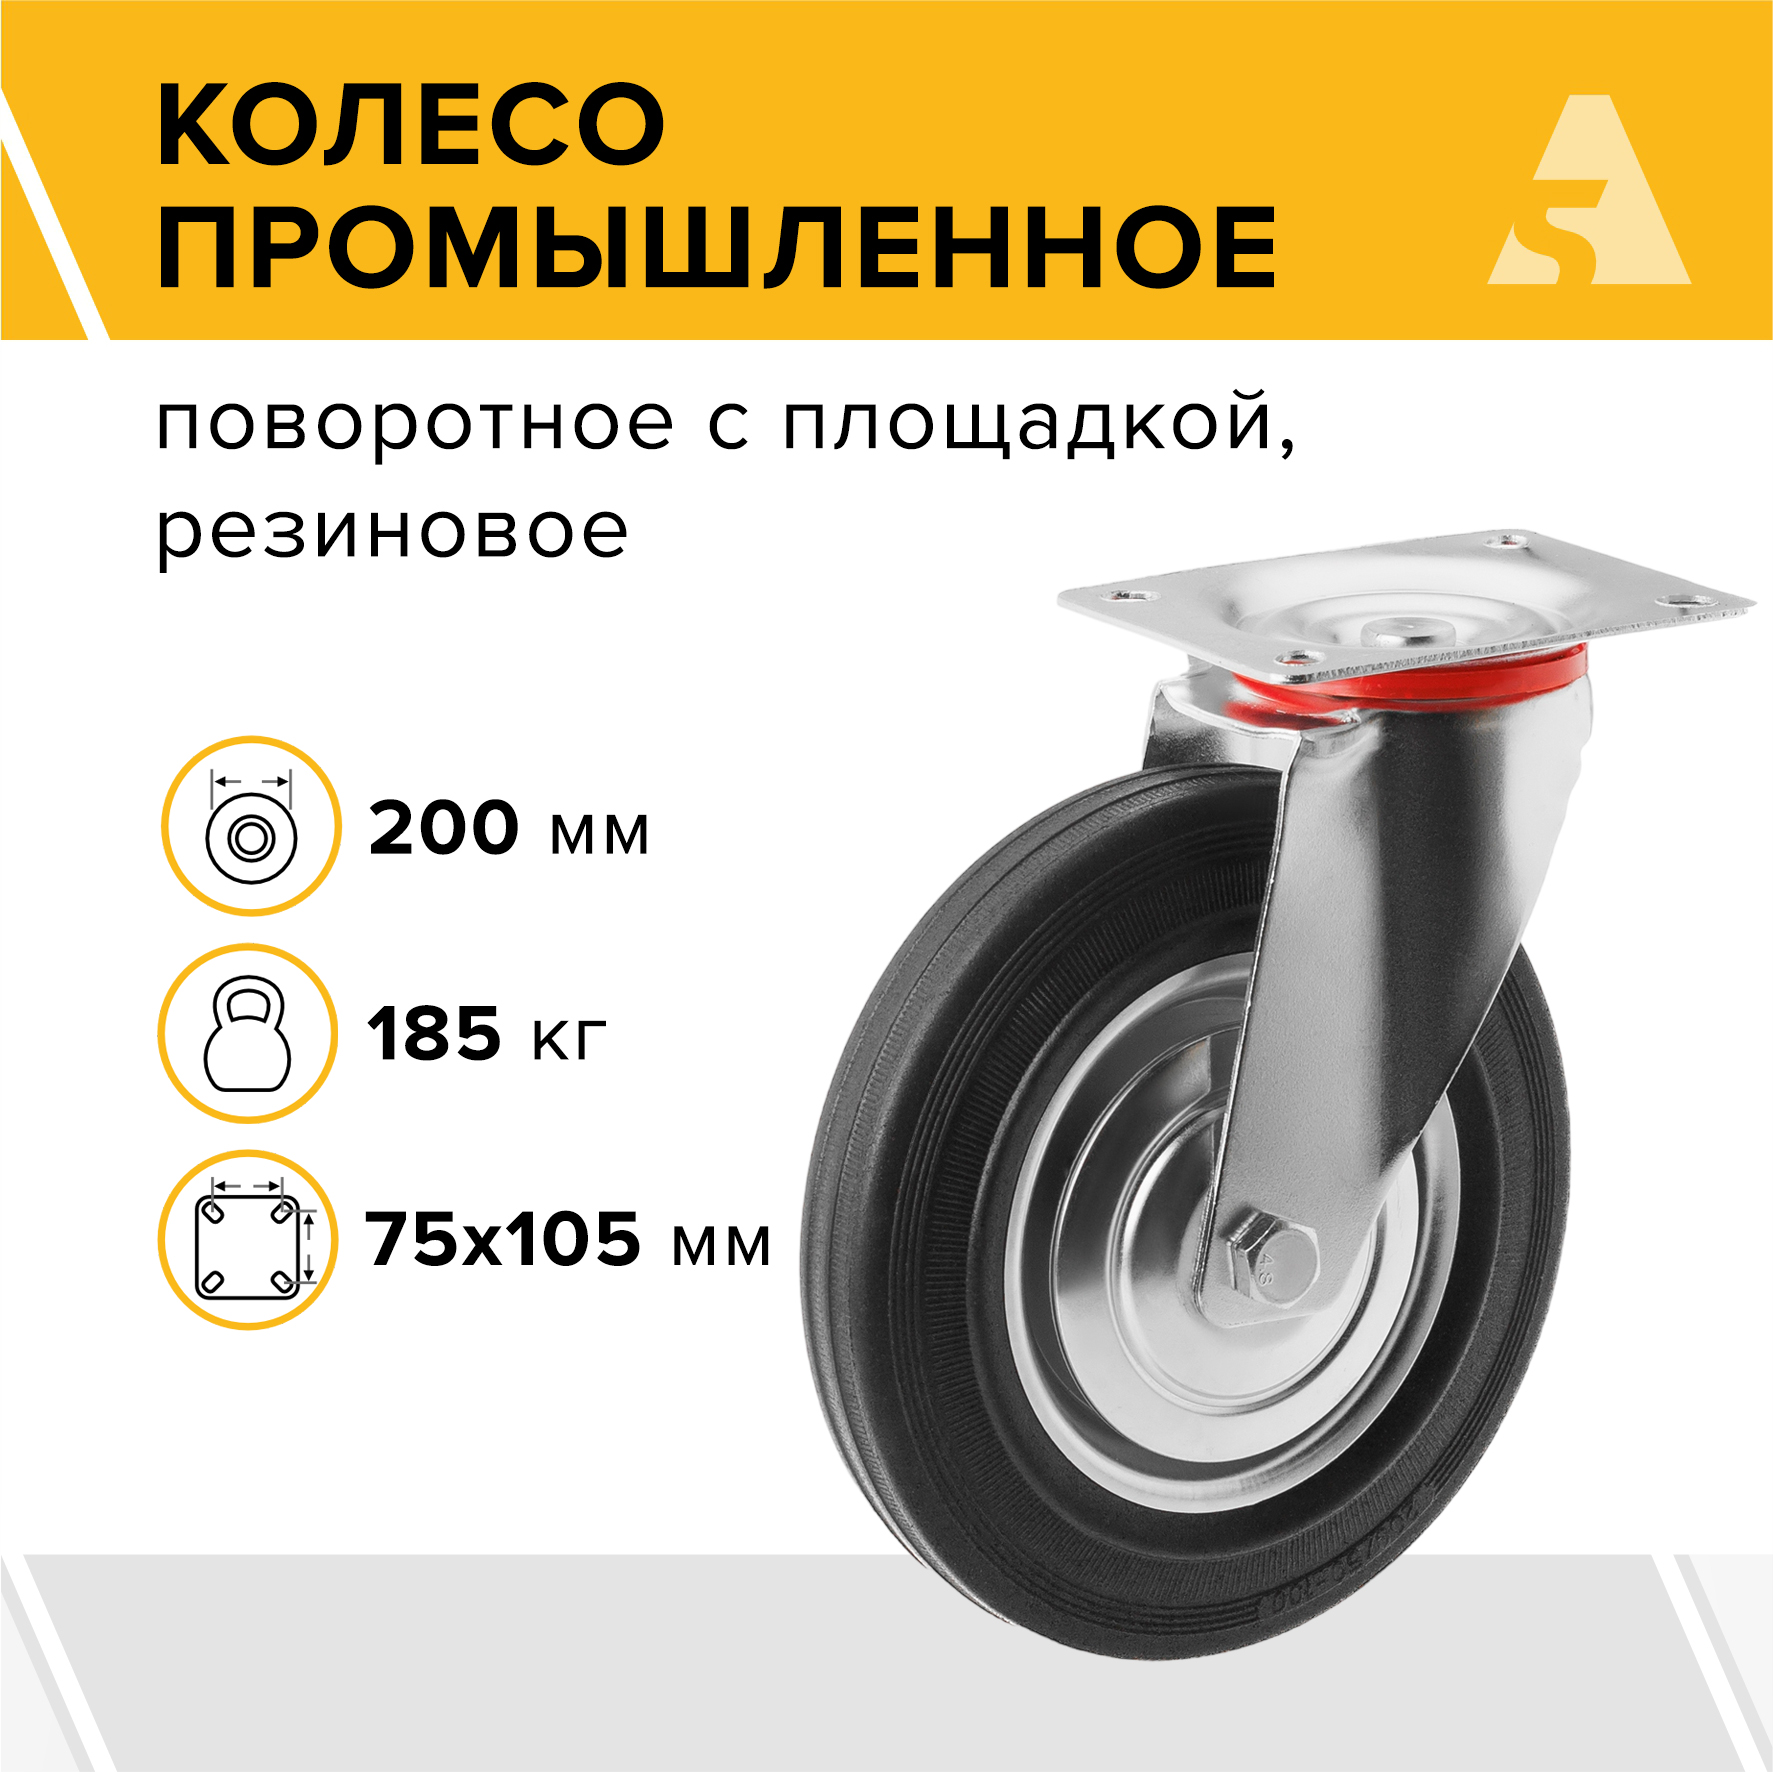 колесо для тележки scd 160 повор литая резина без торм 160мм Колесо промышленное А5 SC 80 1000011